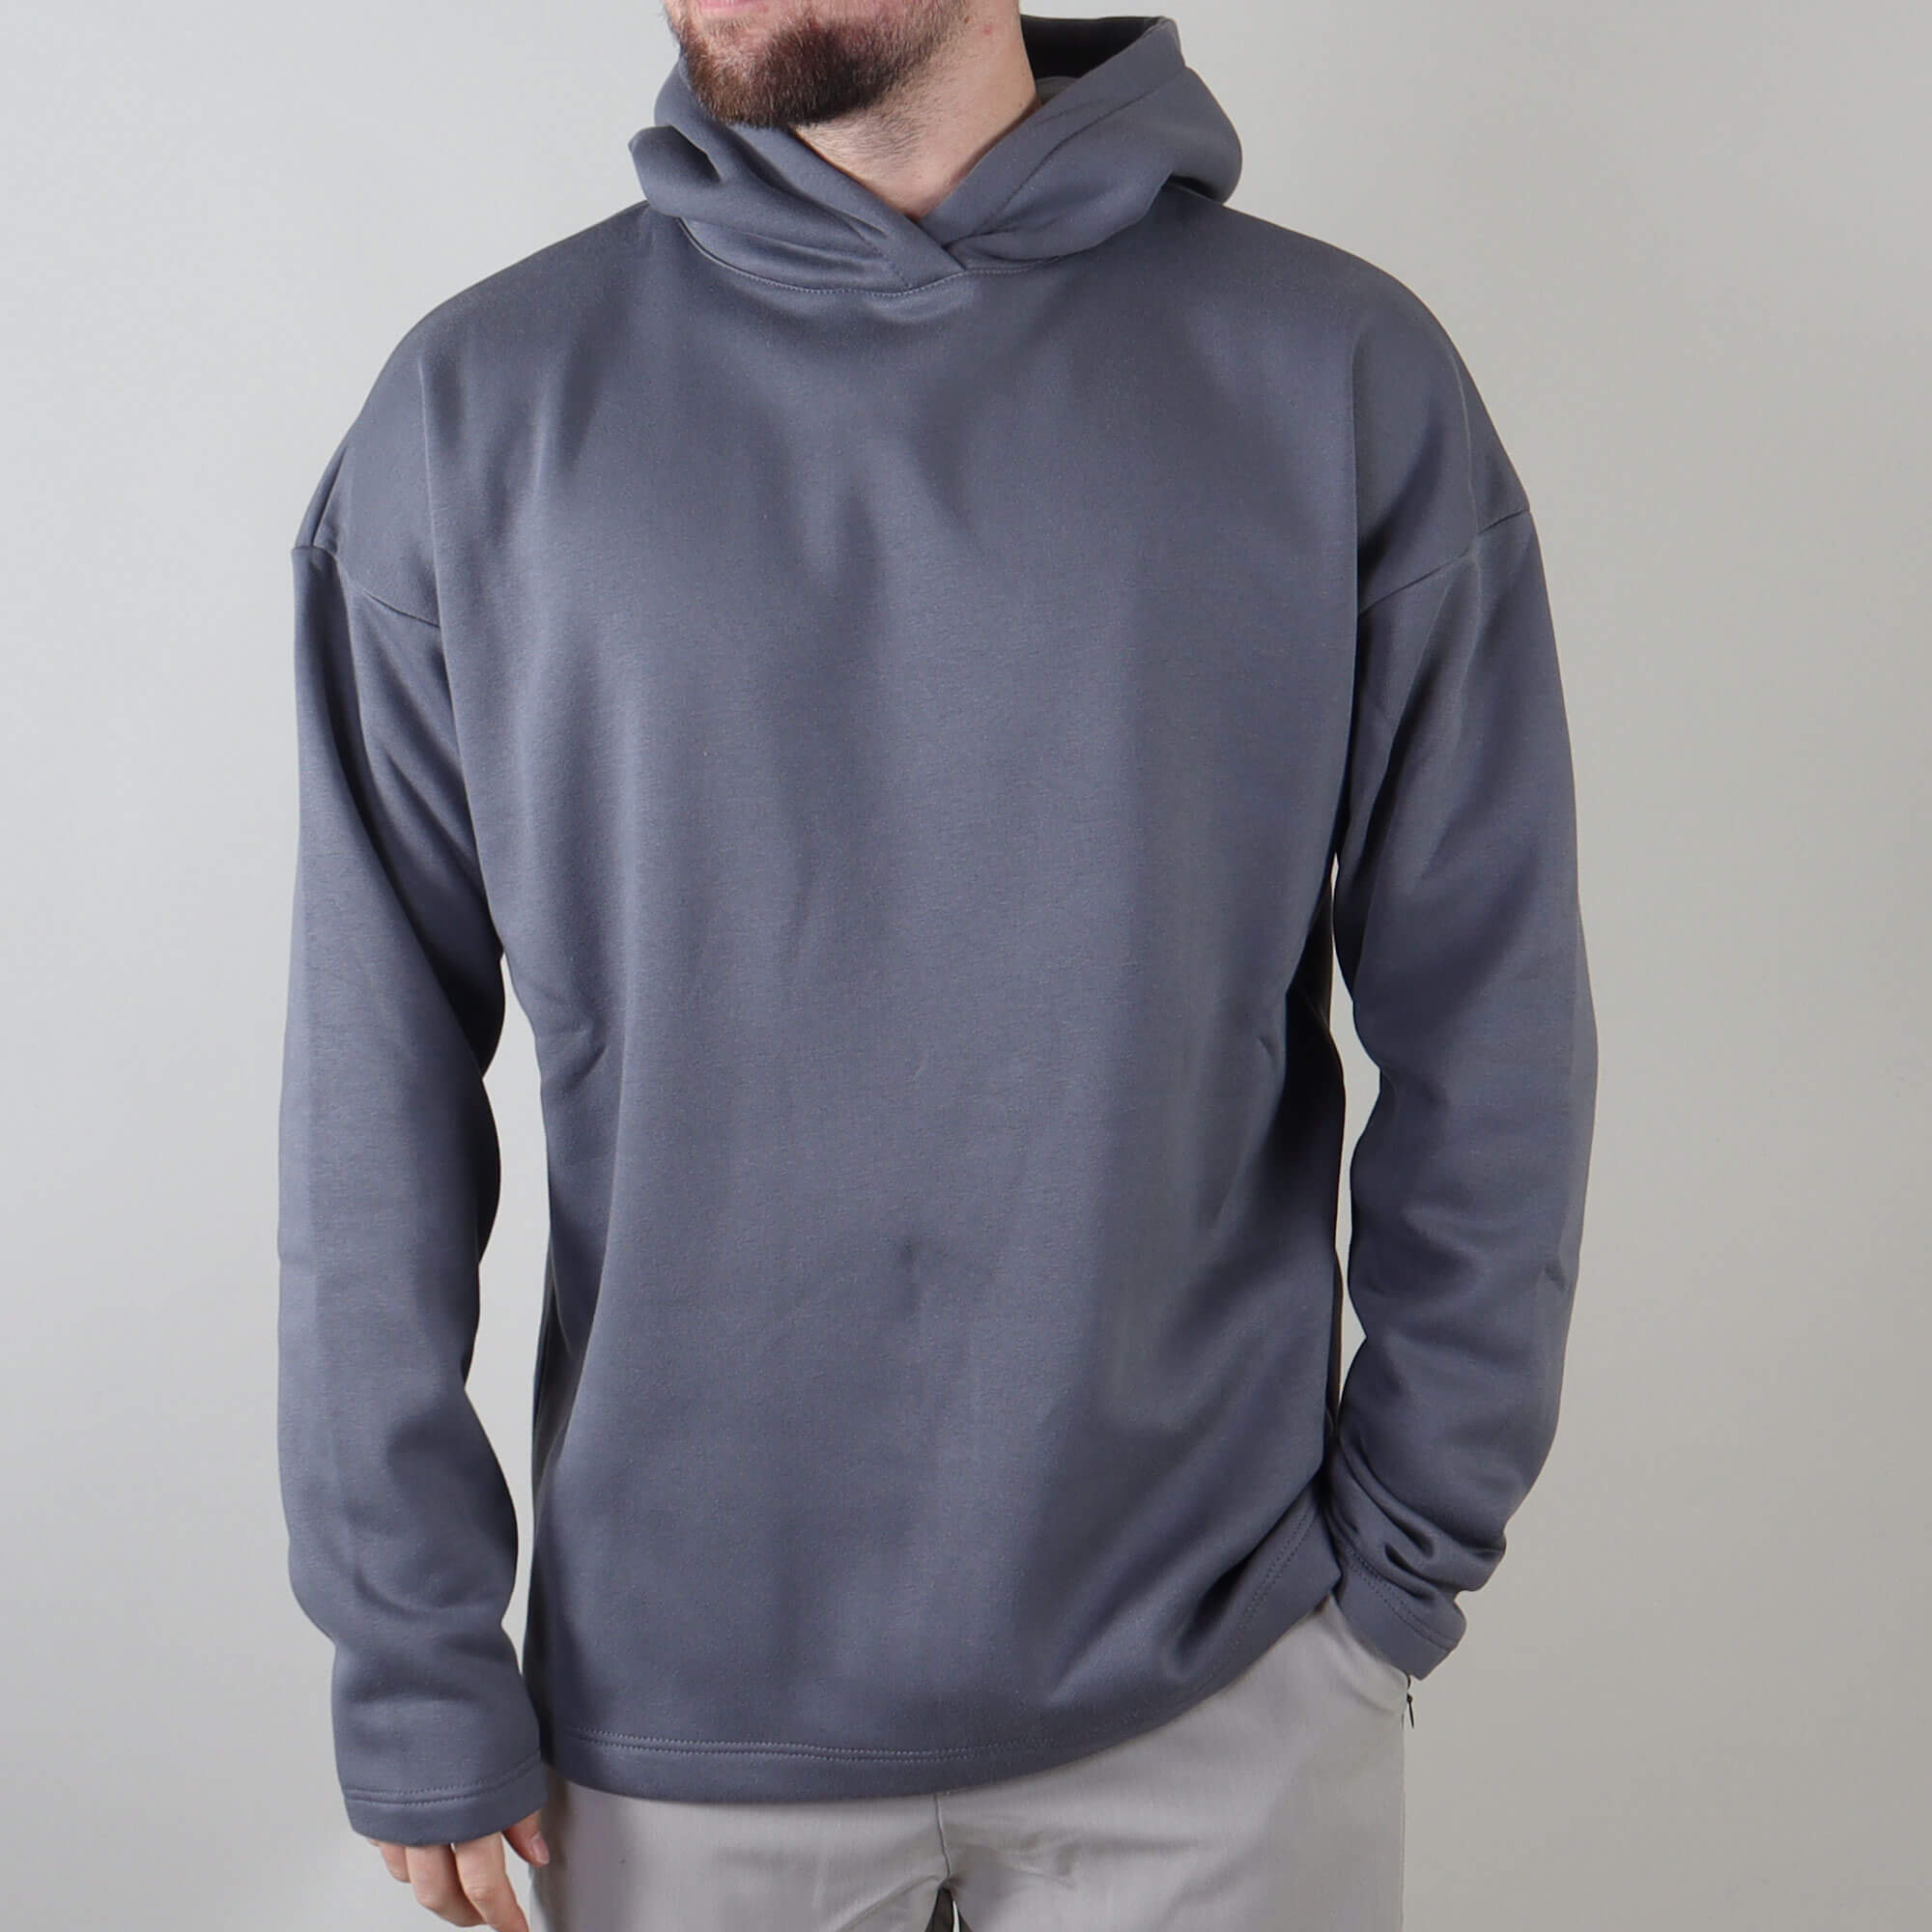 PRJCT hoodie grey